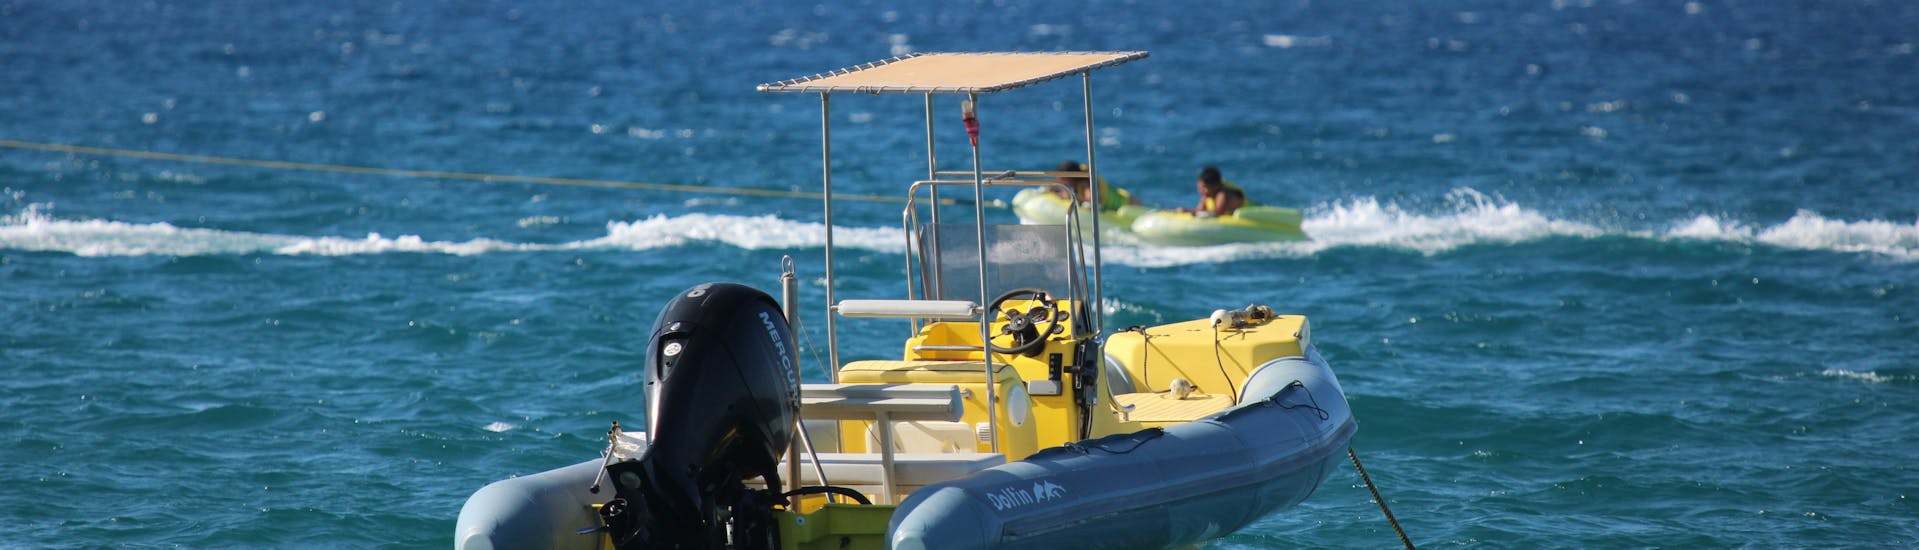 Gita privata in barca a Spiaggia di Ammoudara  e bagno in mare.